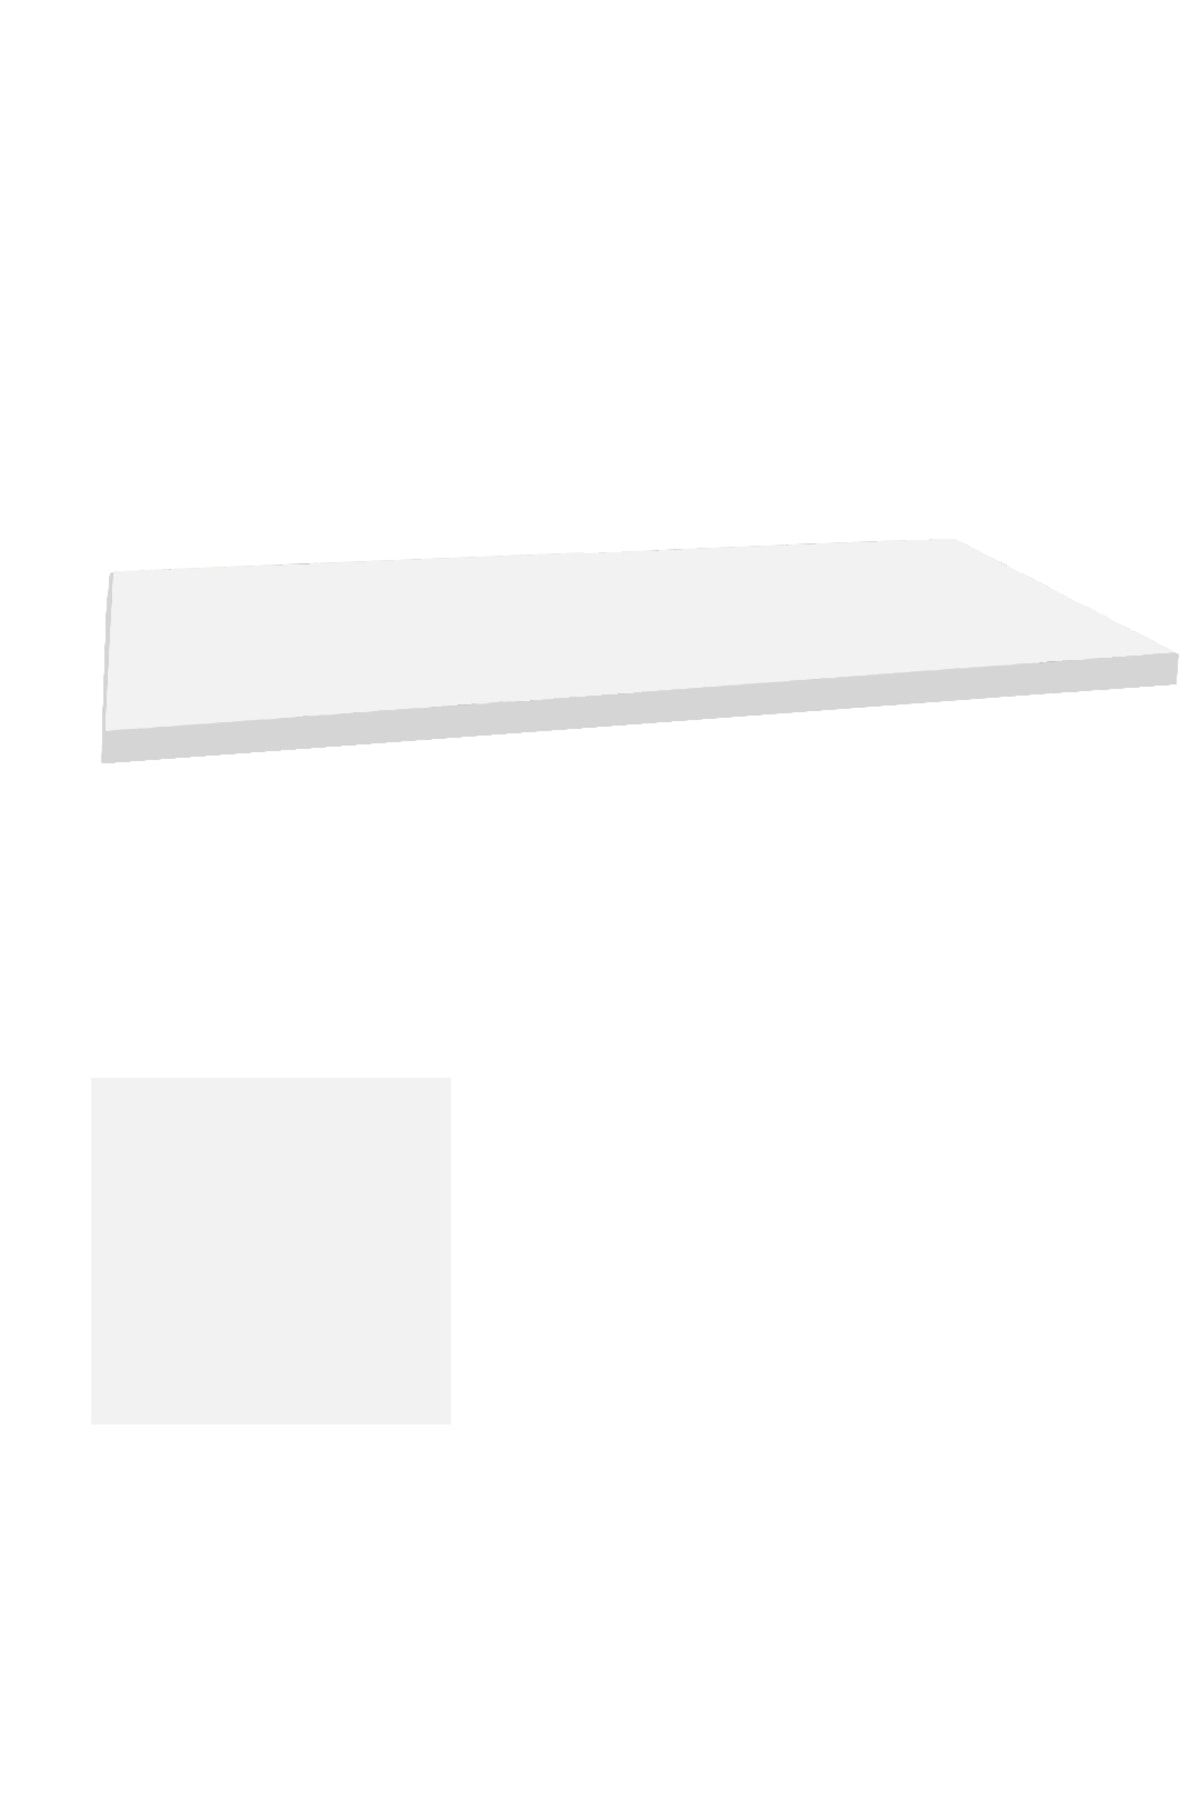 Dockers Laminat Masa Tablası (80x160) - Beyaz